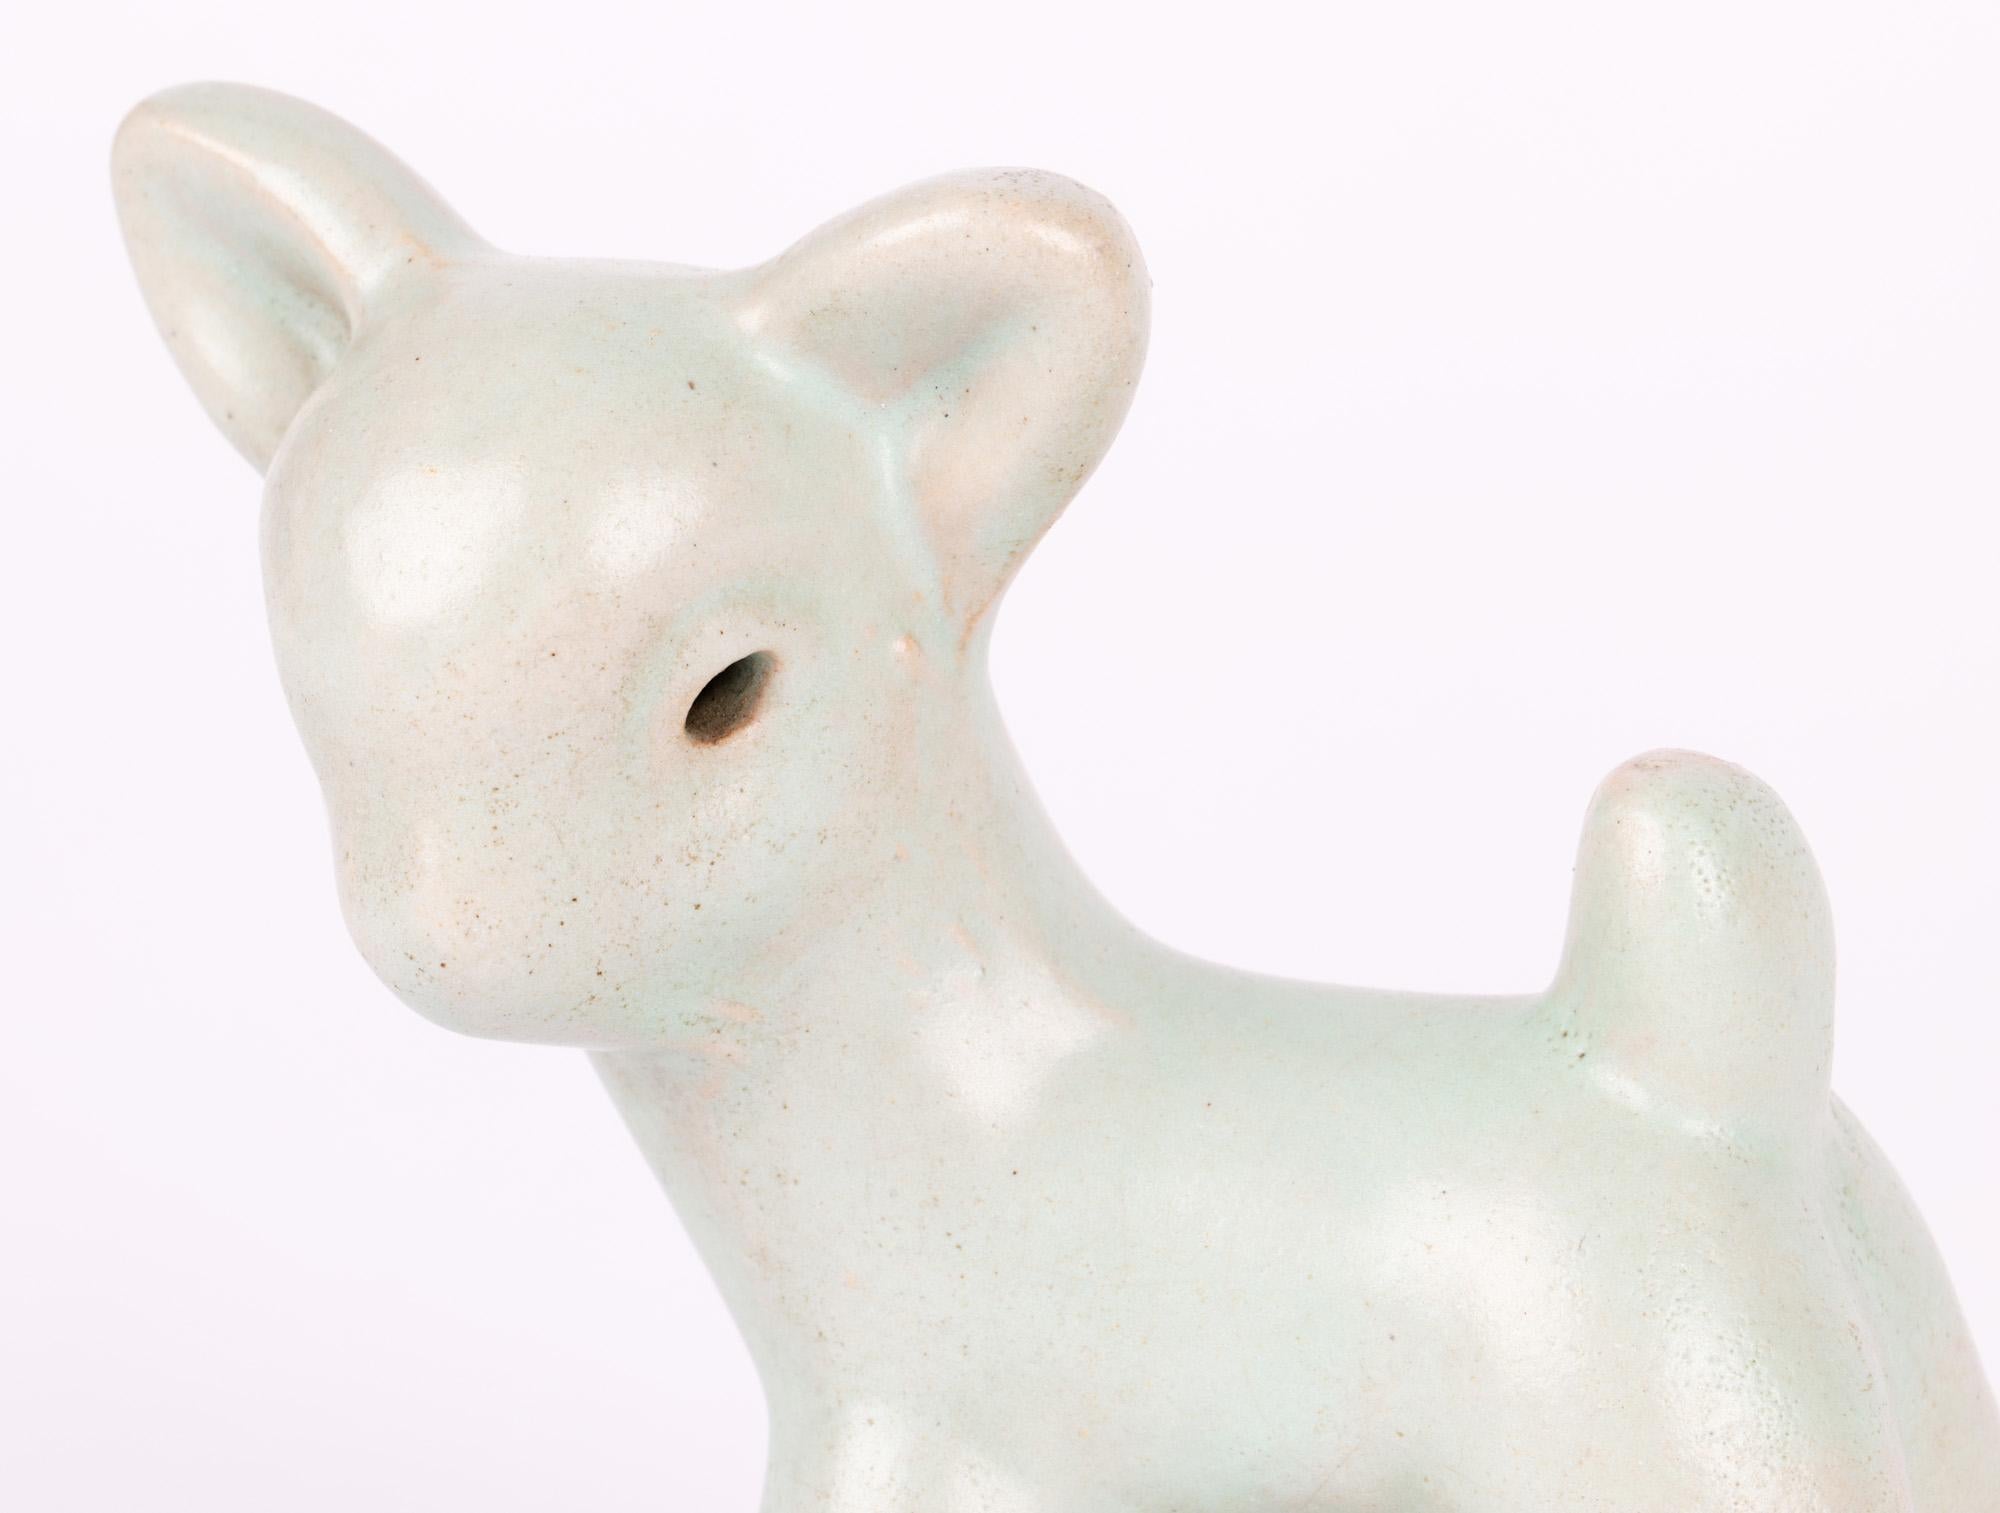 Ravissante figurine d'agneau en poterie anglaise Art déco, décorée de glaçures vertes, fabriquée par Denby et datant des années 1930. La figurine est fabriquée à la main et repose sur quatre pattes. La tête est tournée sur le côté, les oreilles et